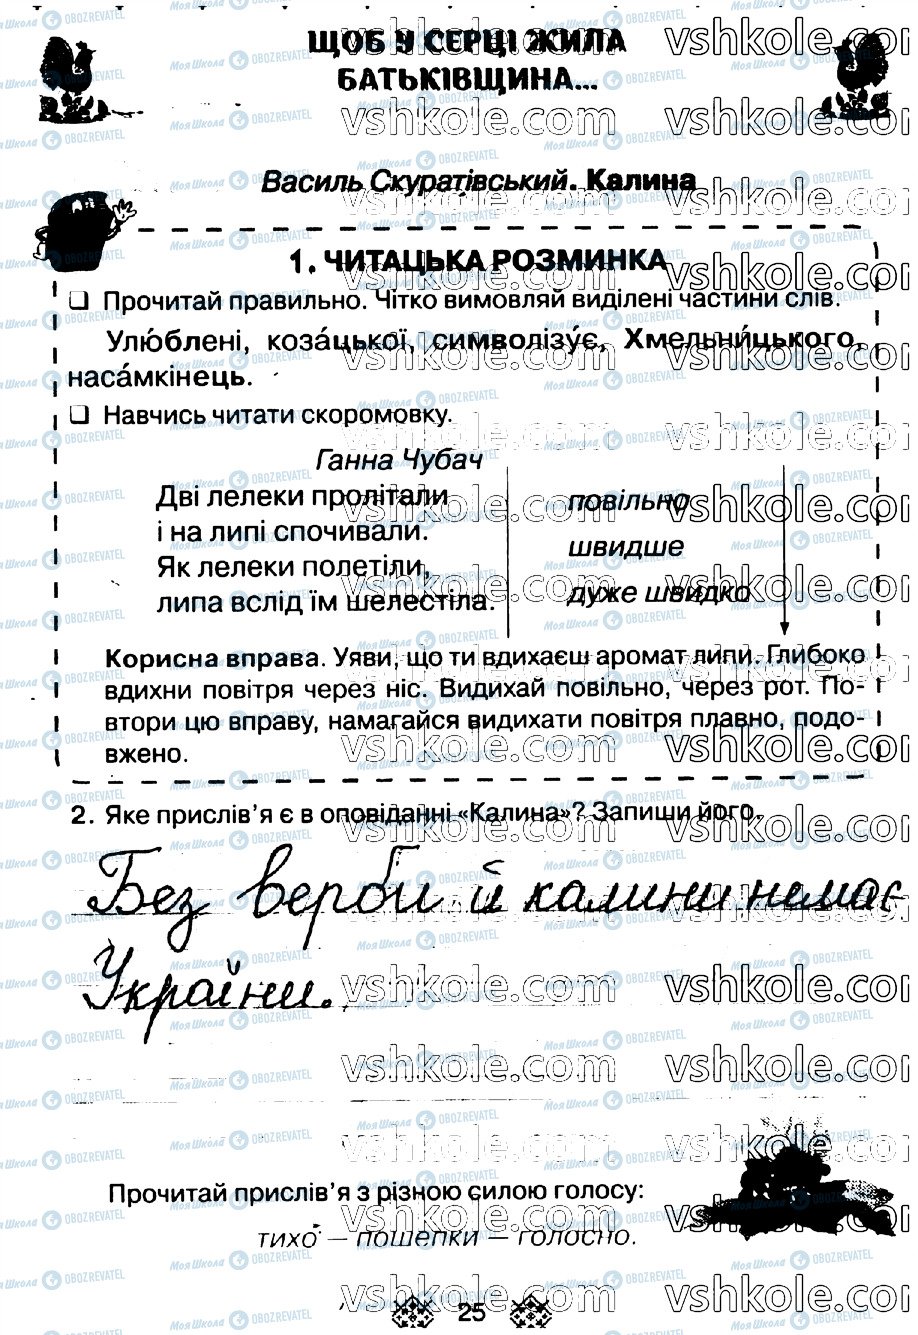 ГДЗ Укр мова 2 класс страница стр25